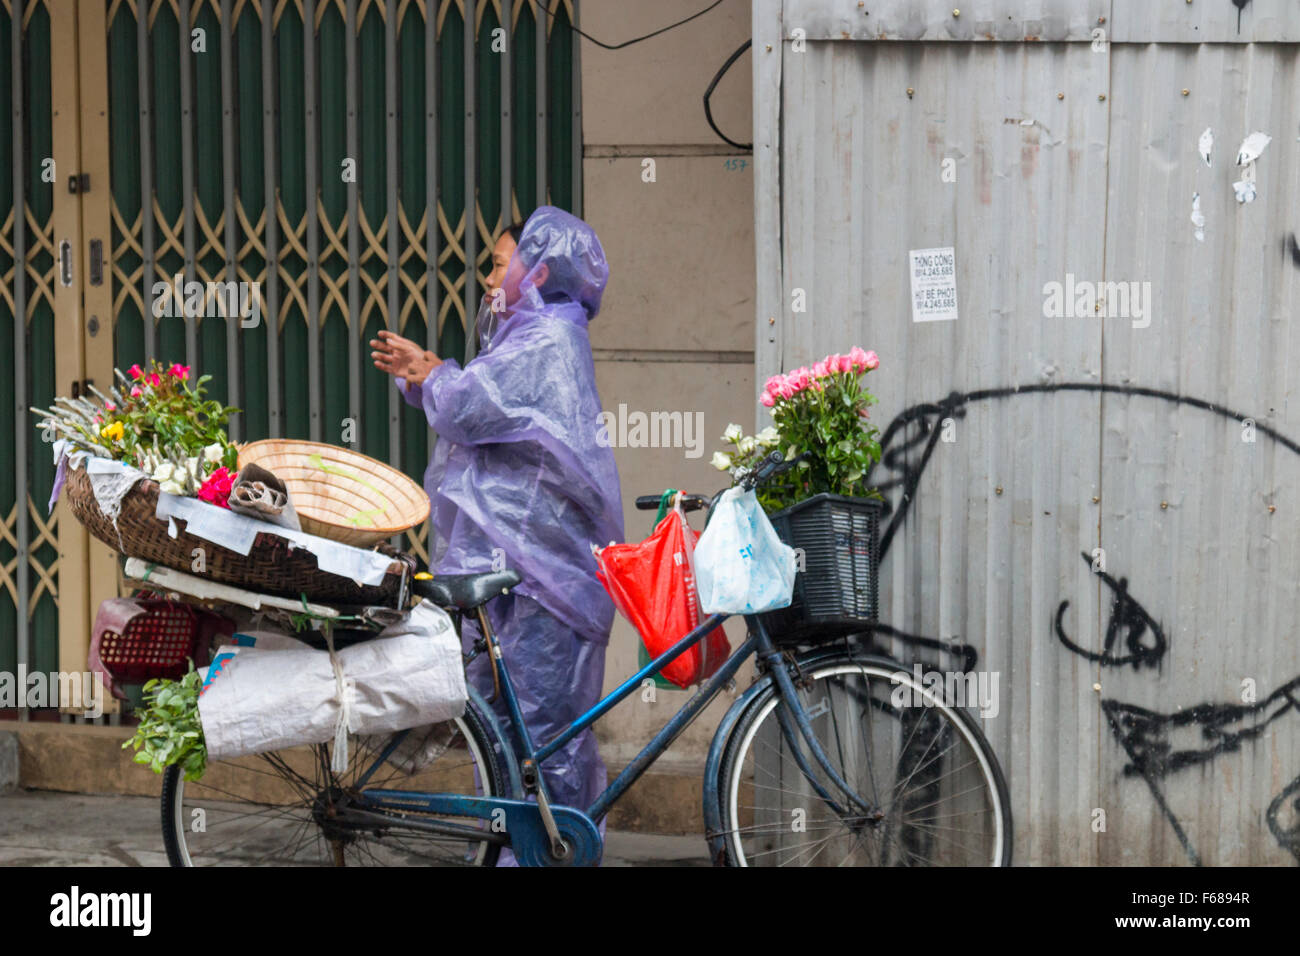 Dame vietnamienne dans le plastique vend mac fleurs sur la face de son vélo dans la région de vieux quartier de Hanoi, Vietnam Banque D'Images